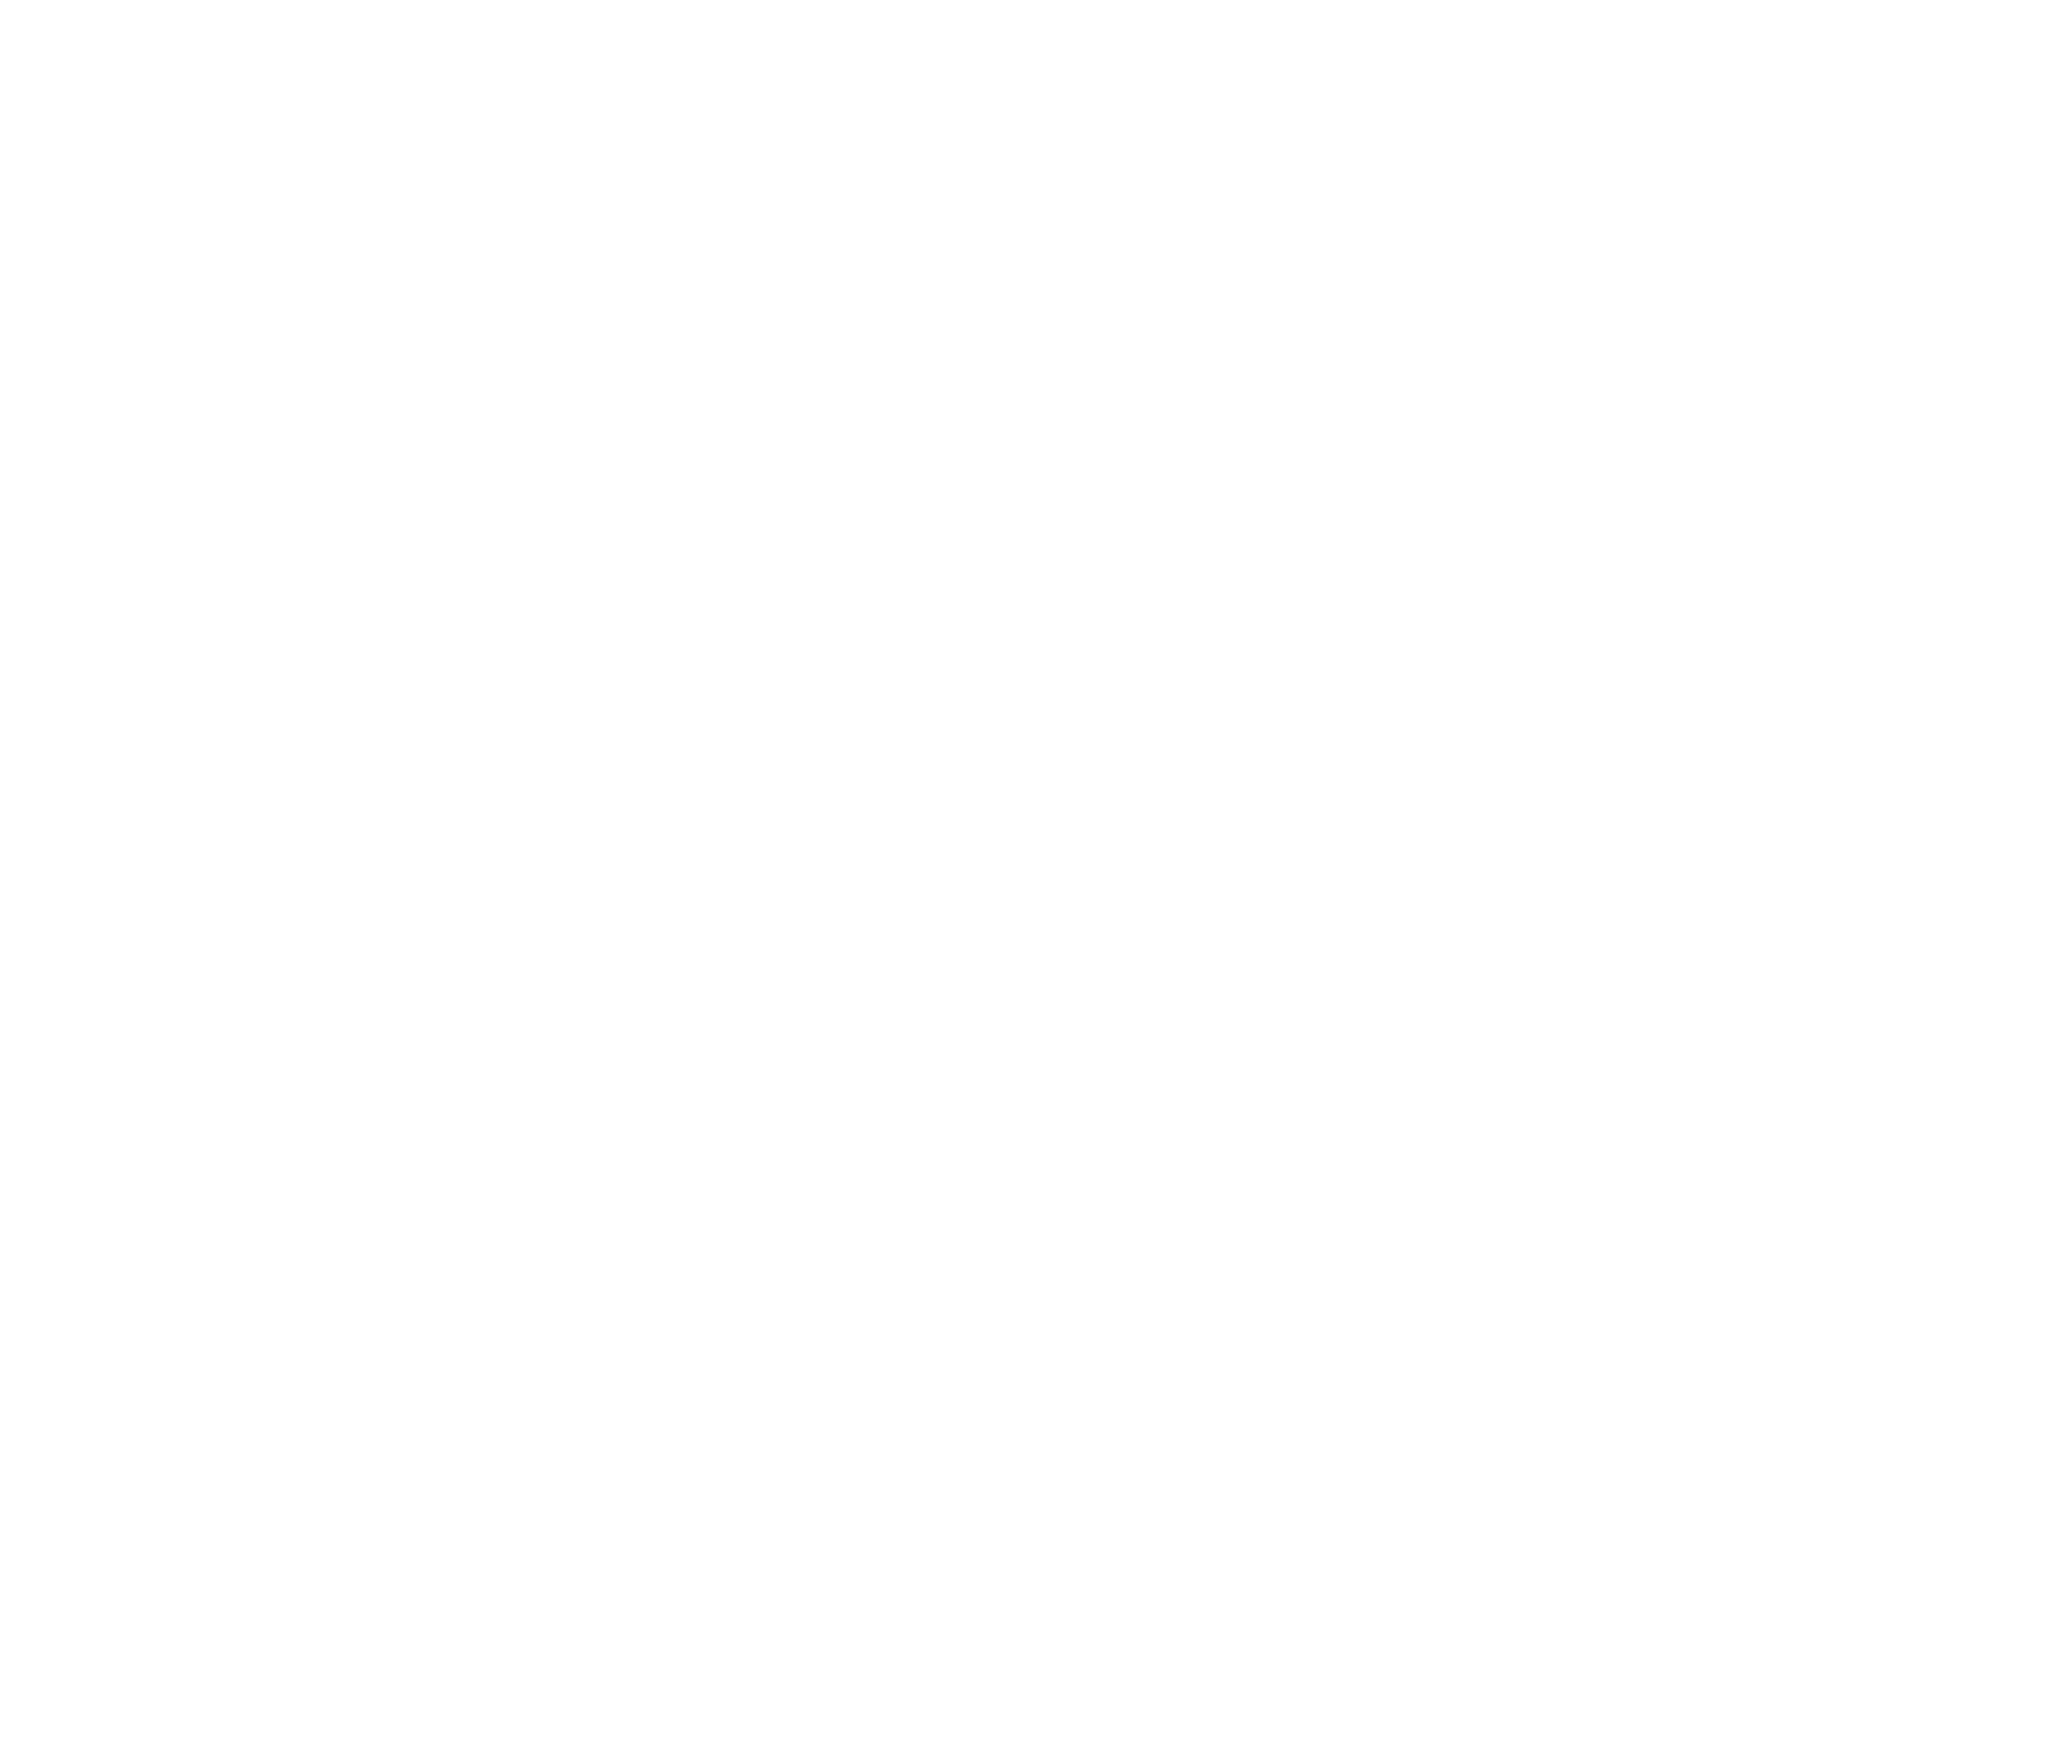 Guitar Gear Pro